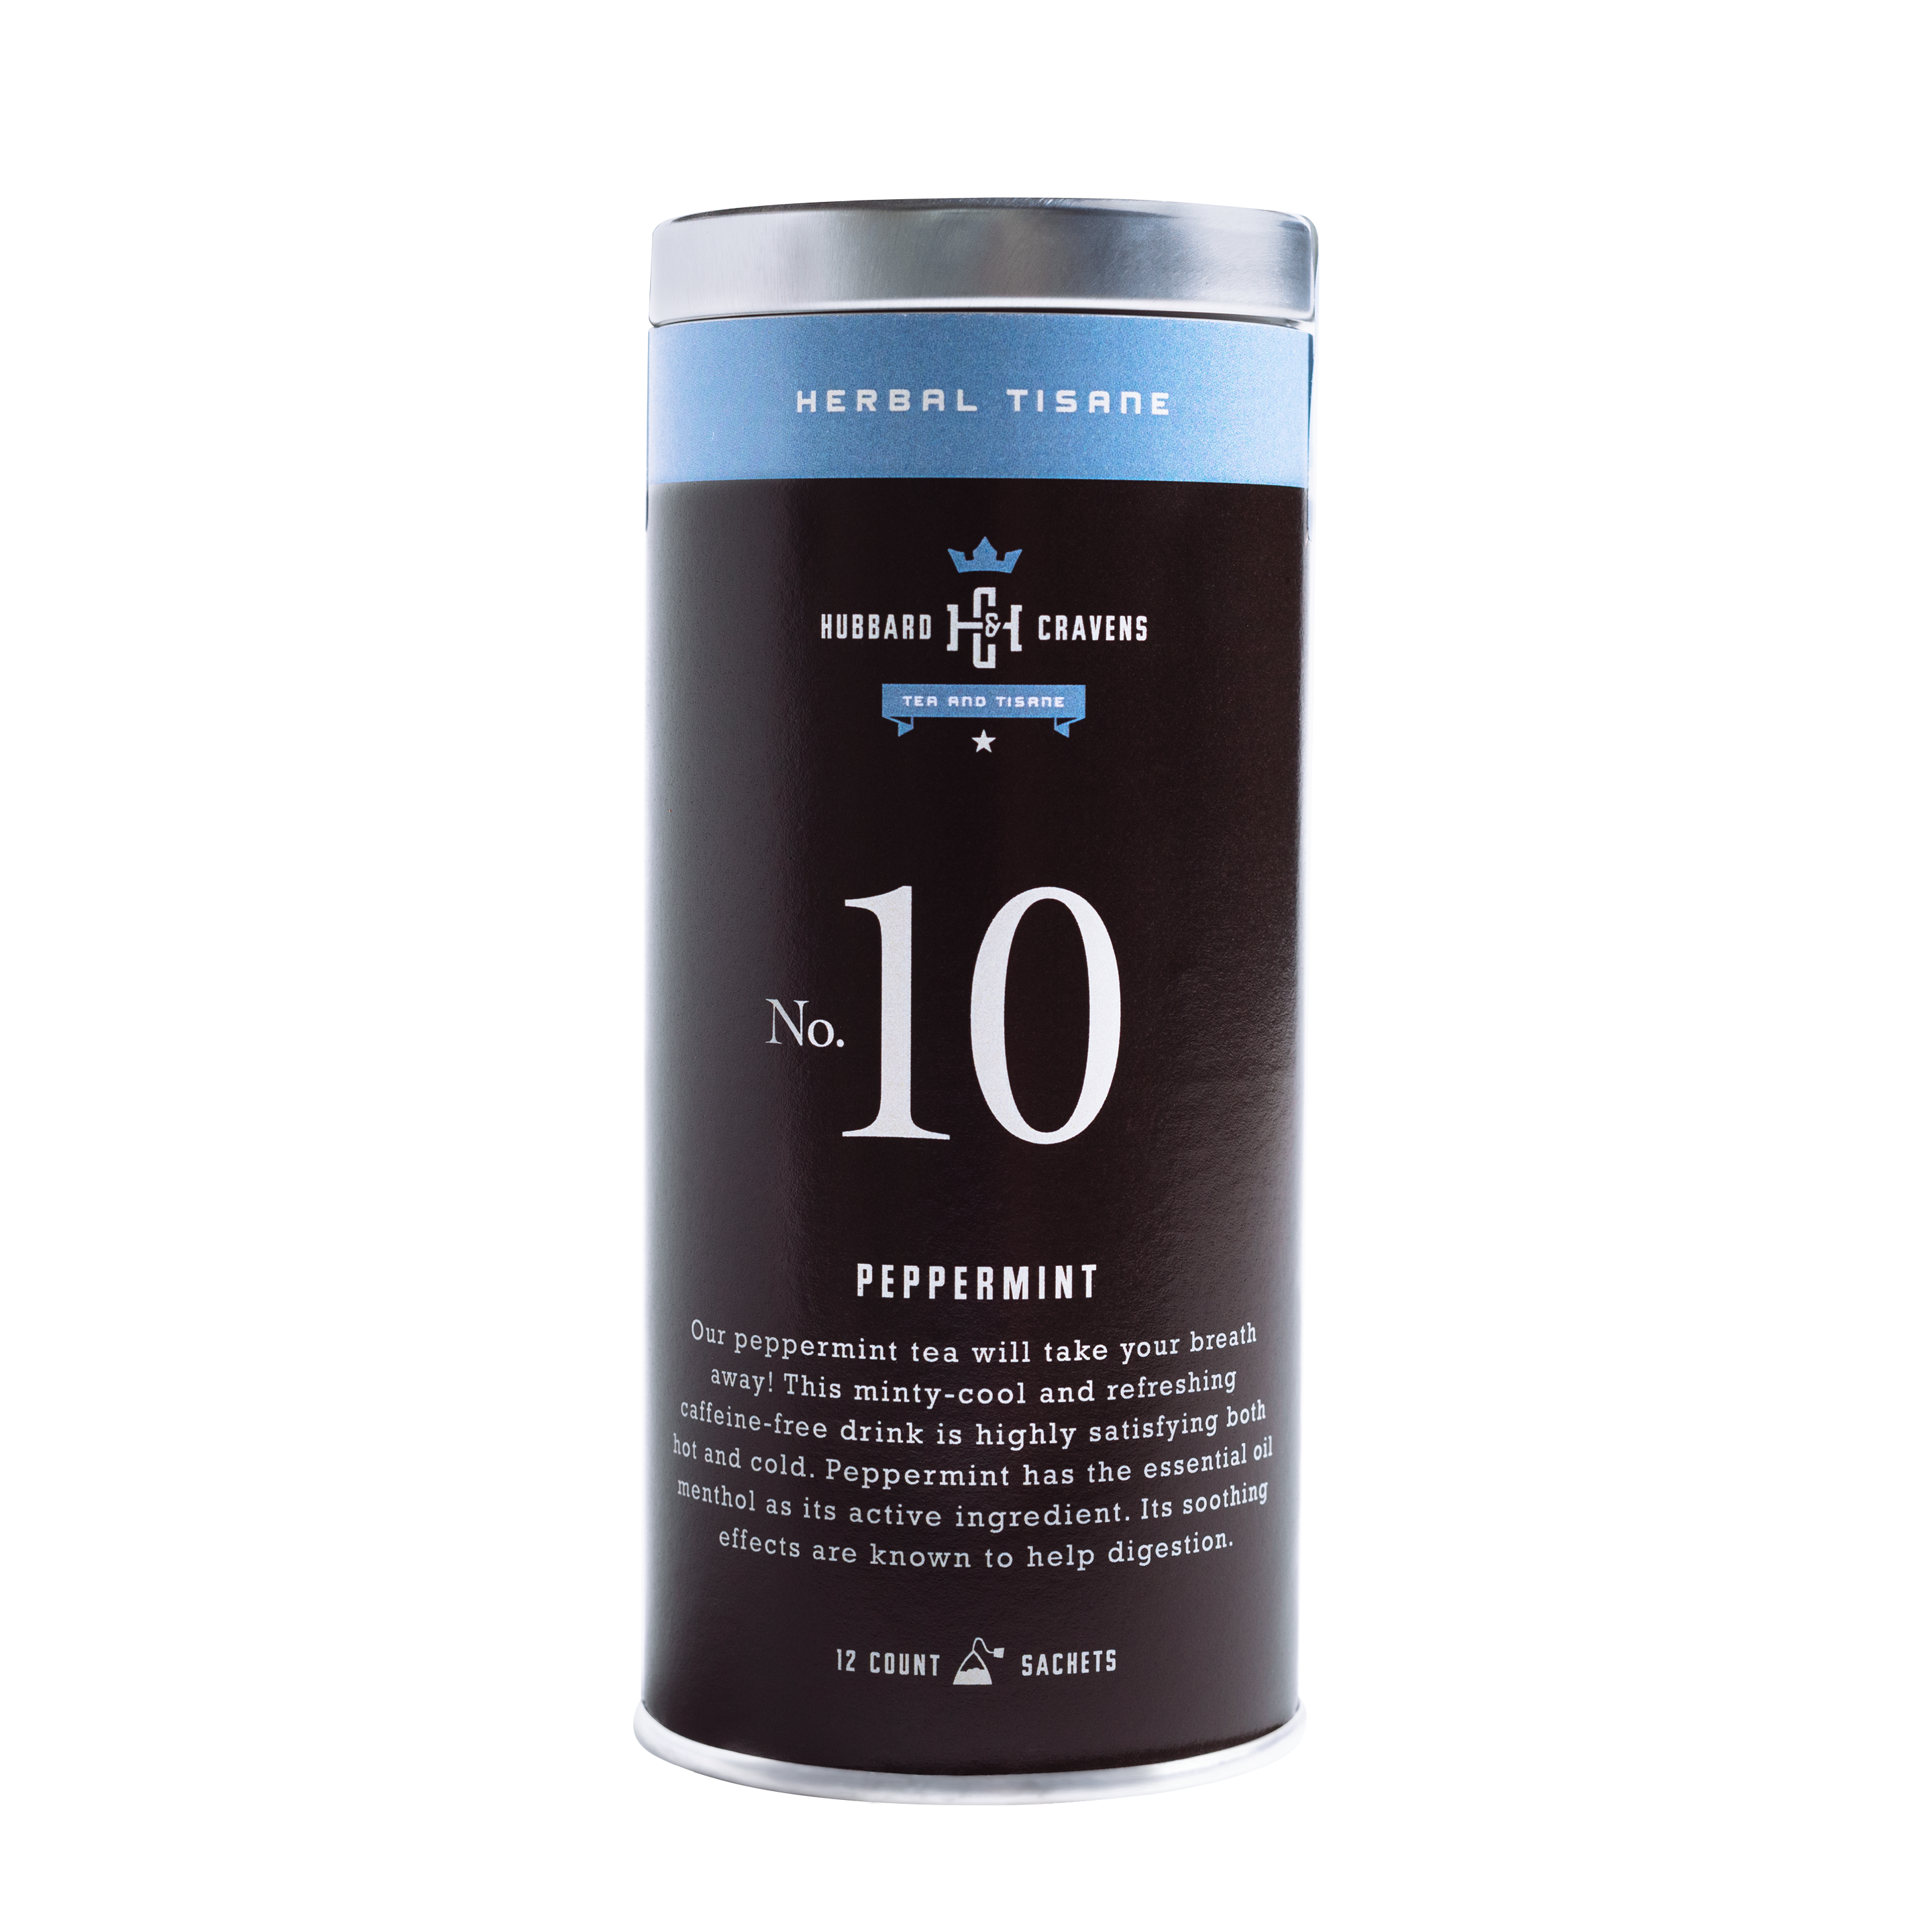 Herbal tisane, peppermint tea tin on transparent background